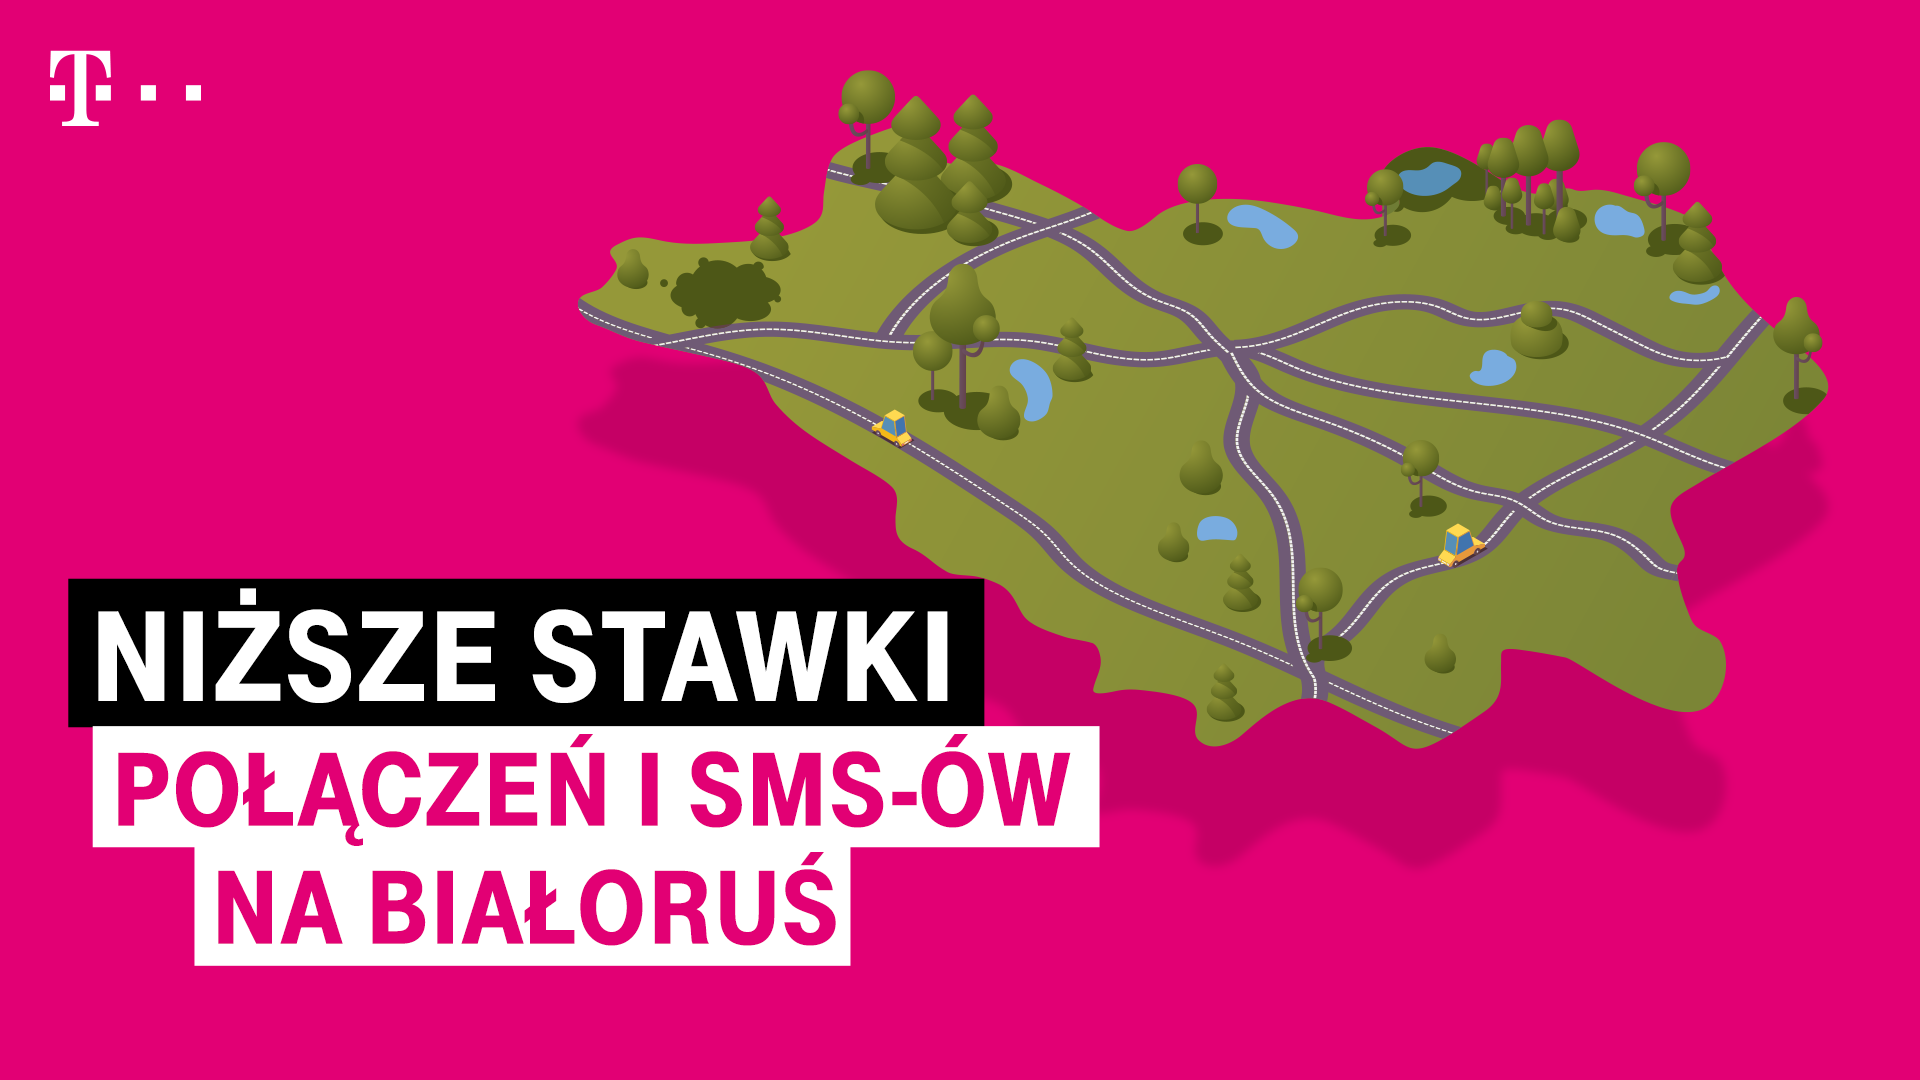 T-Mobile obniża stawki połączeń i SMS-ów na Białoruś